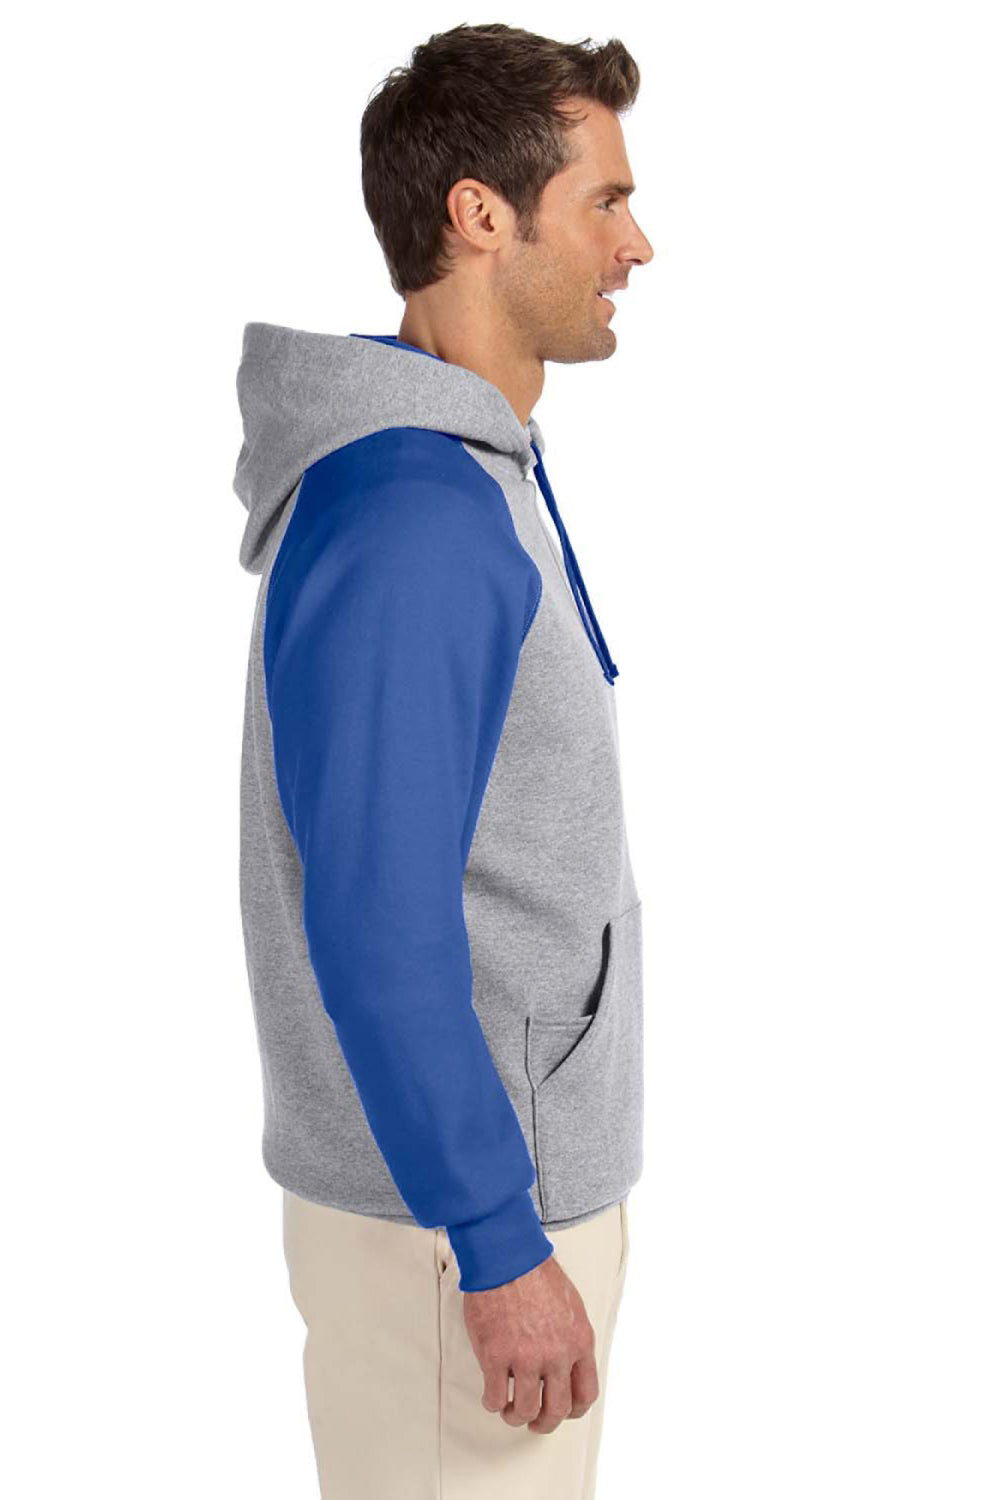 Jerzees 96CR Mens NuBlend Fleece Hooded Sweatshirt Hoodie Oxford Grey/Royal Blue Side